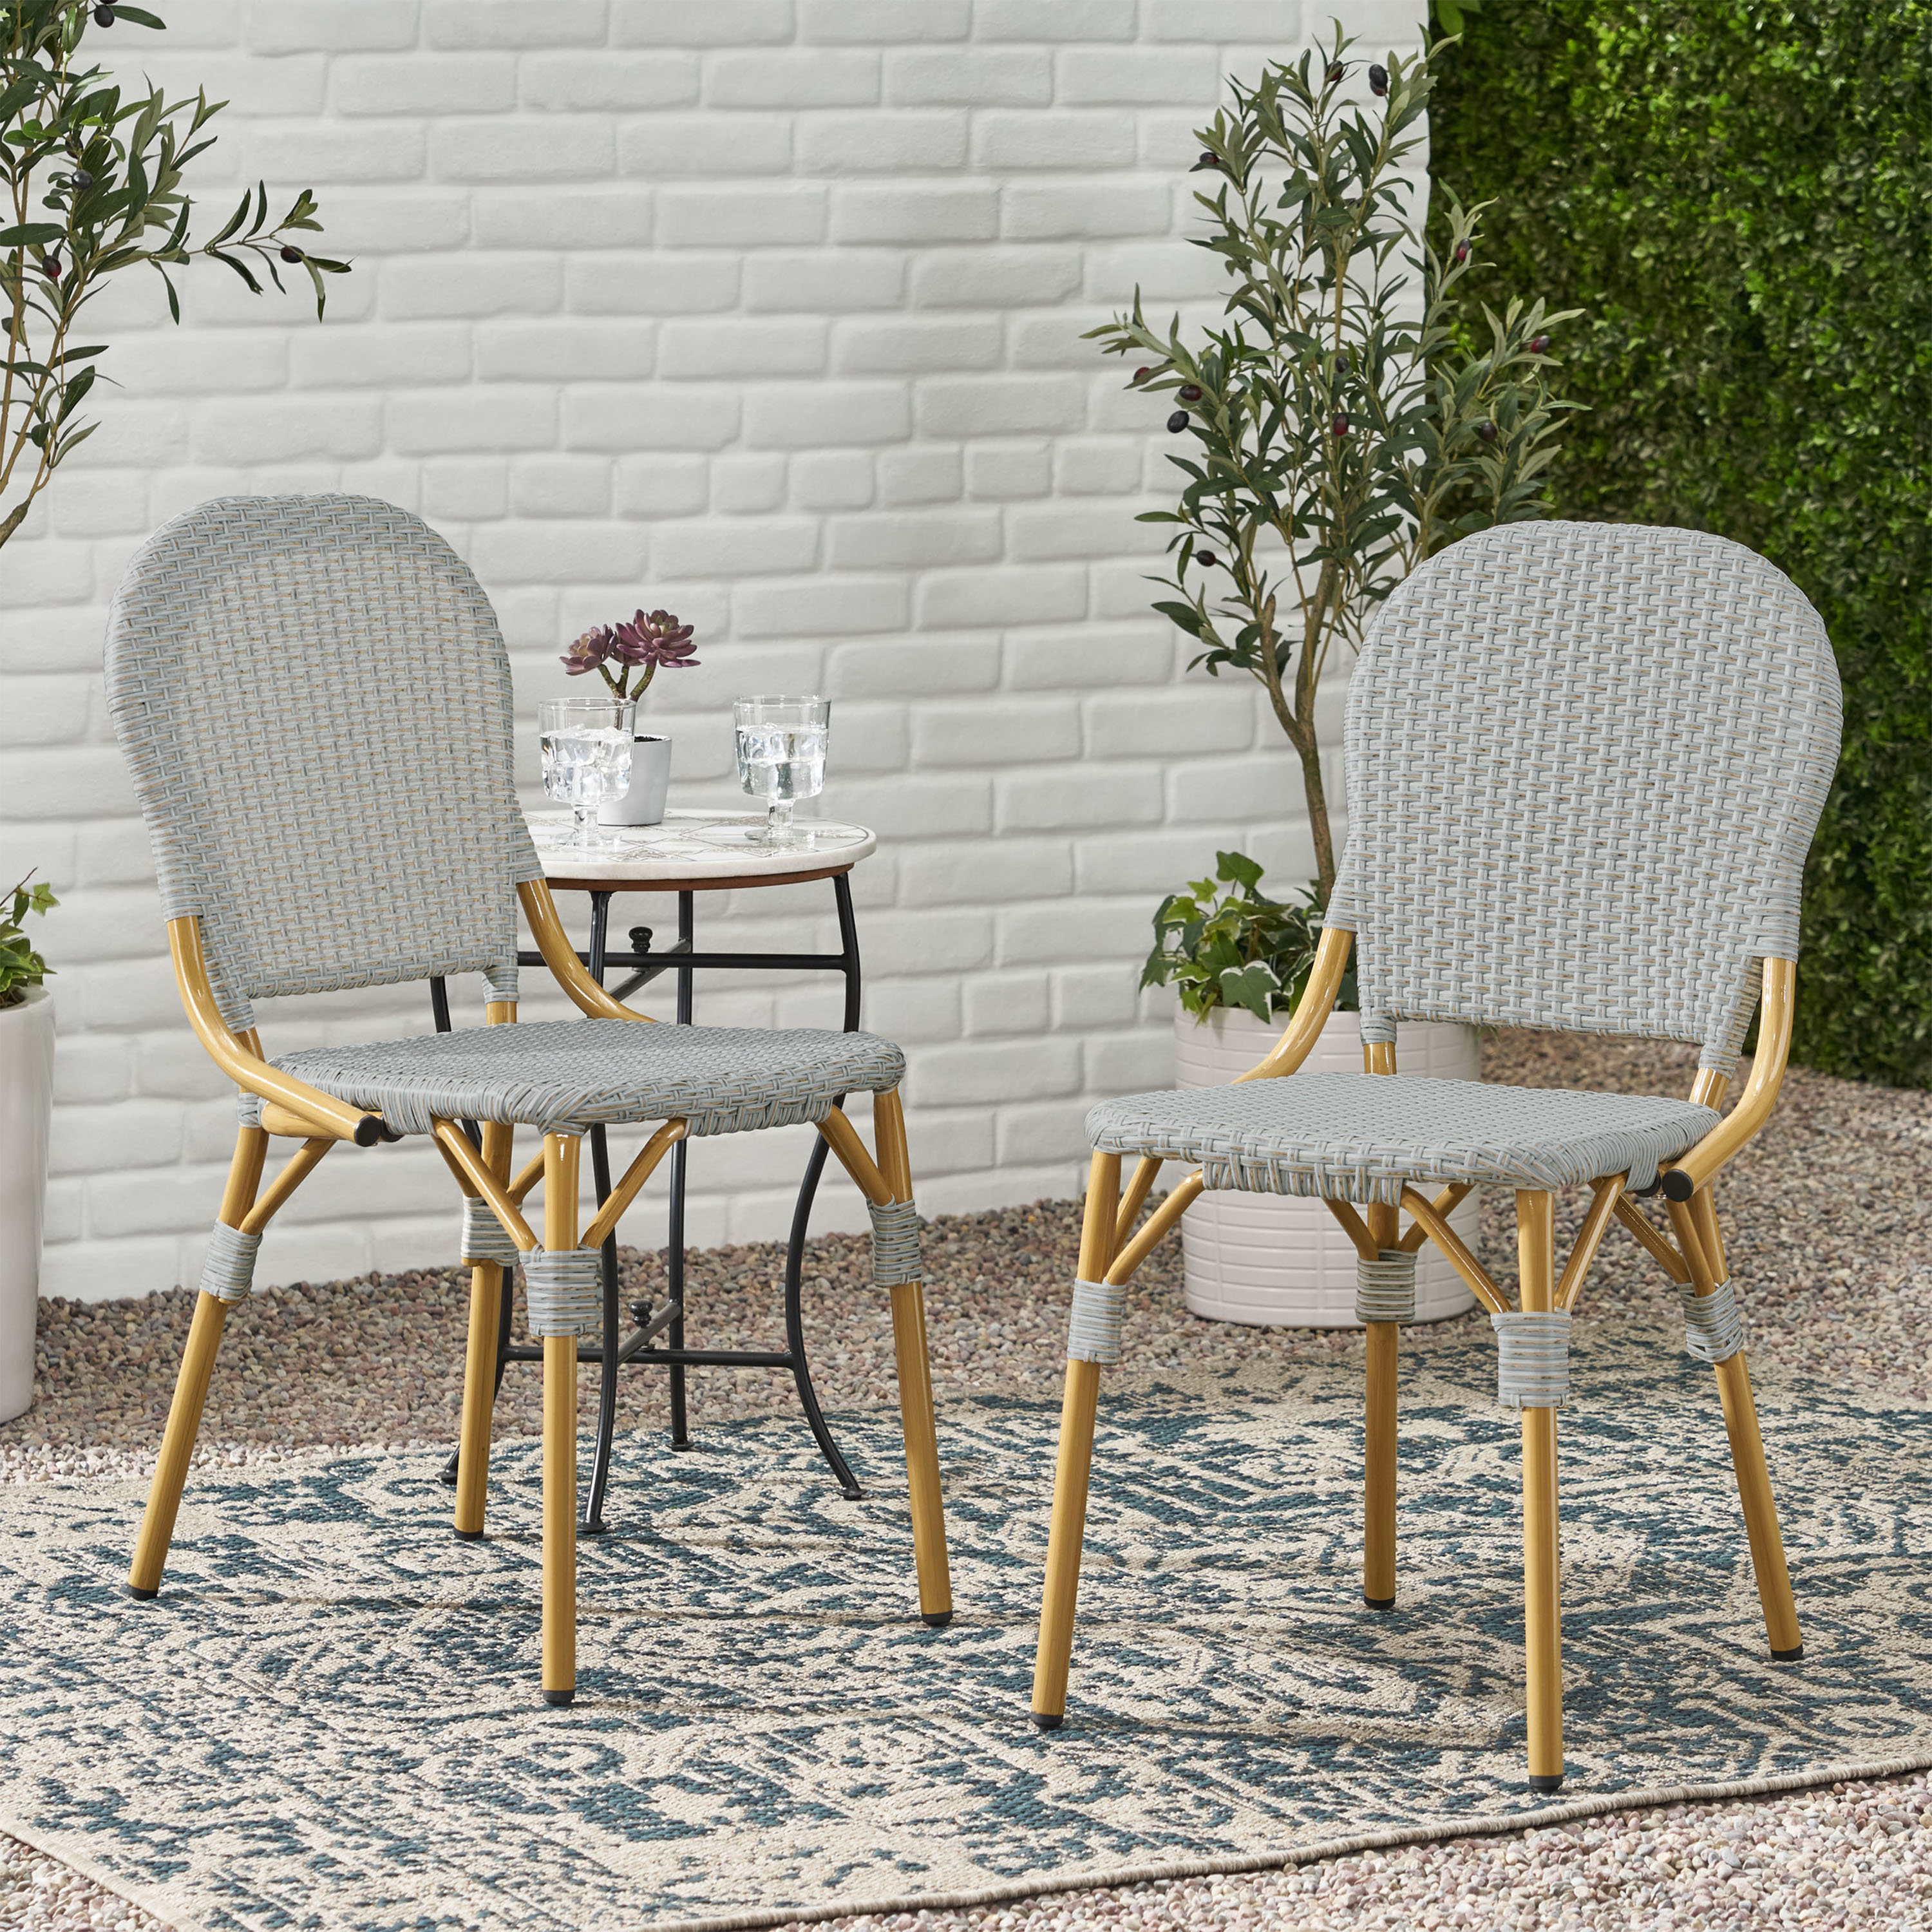 https://assets.wfcdn.com/im/49128970/compr-r85/2487/248763653/vivan-wicker-outdoor-dining-side-chair.jpg